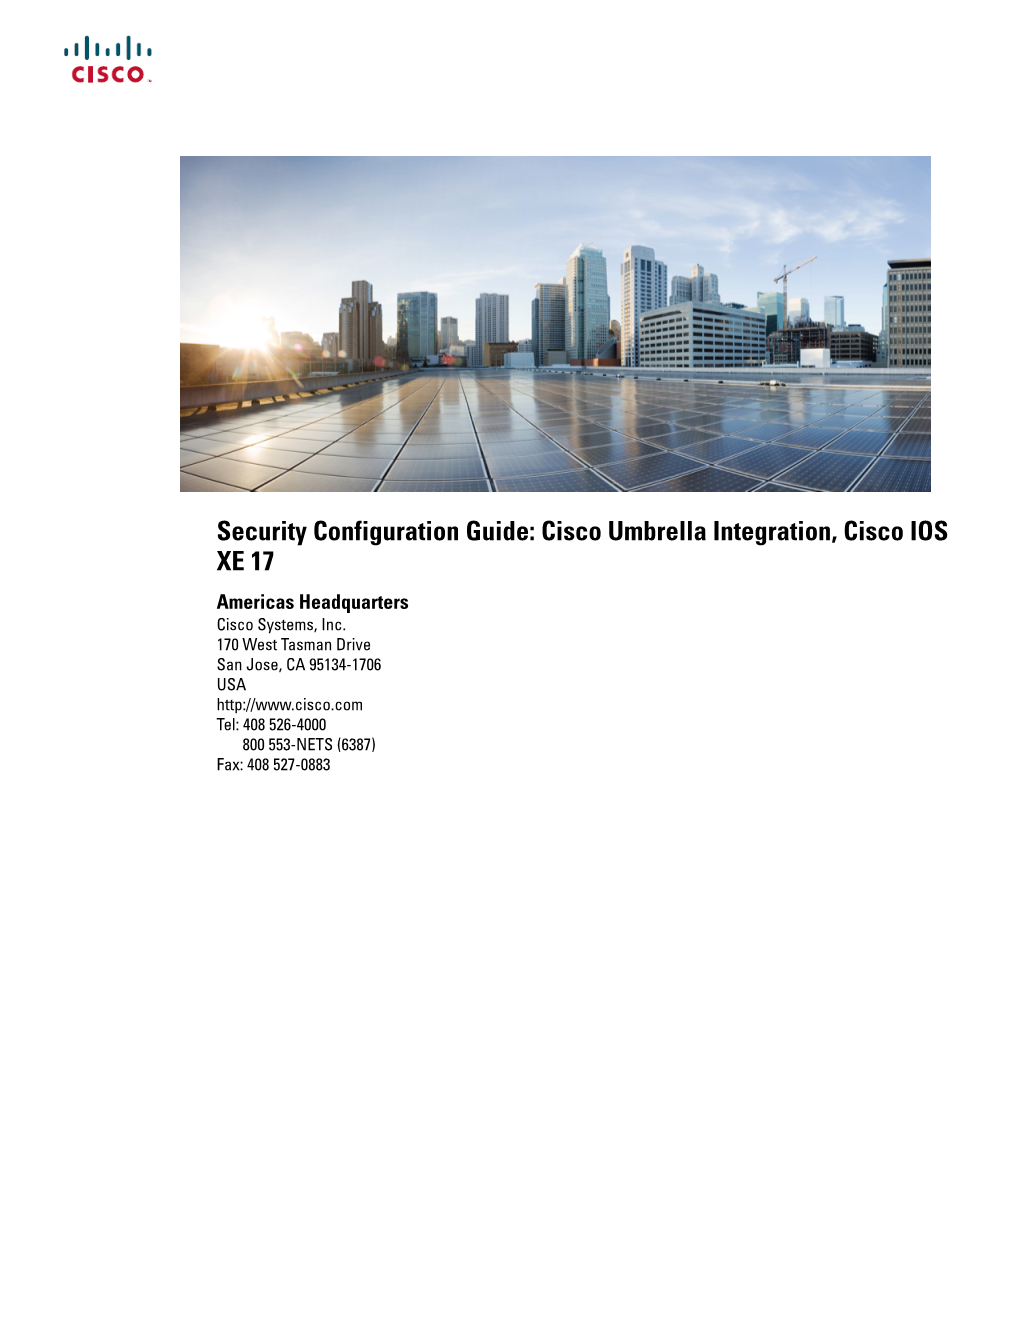 Security Configuration Guide: Cisco Umbrella Integration, Cisco IOS XE 17 Americas Headquarters Cisco Systems, Inc